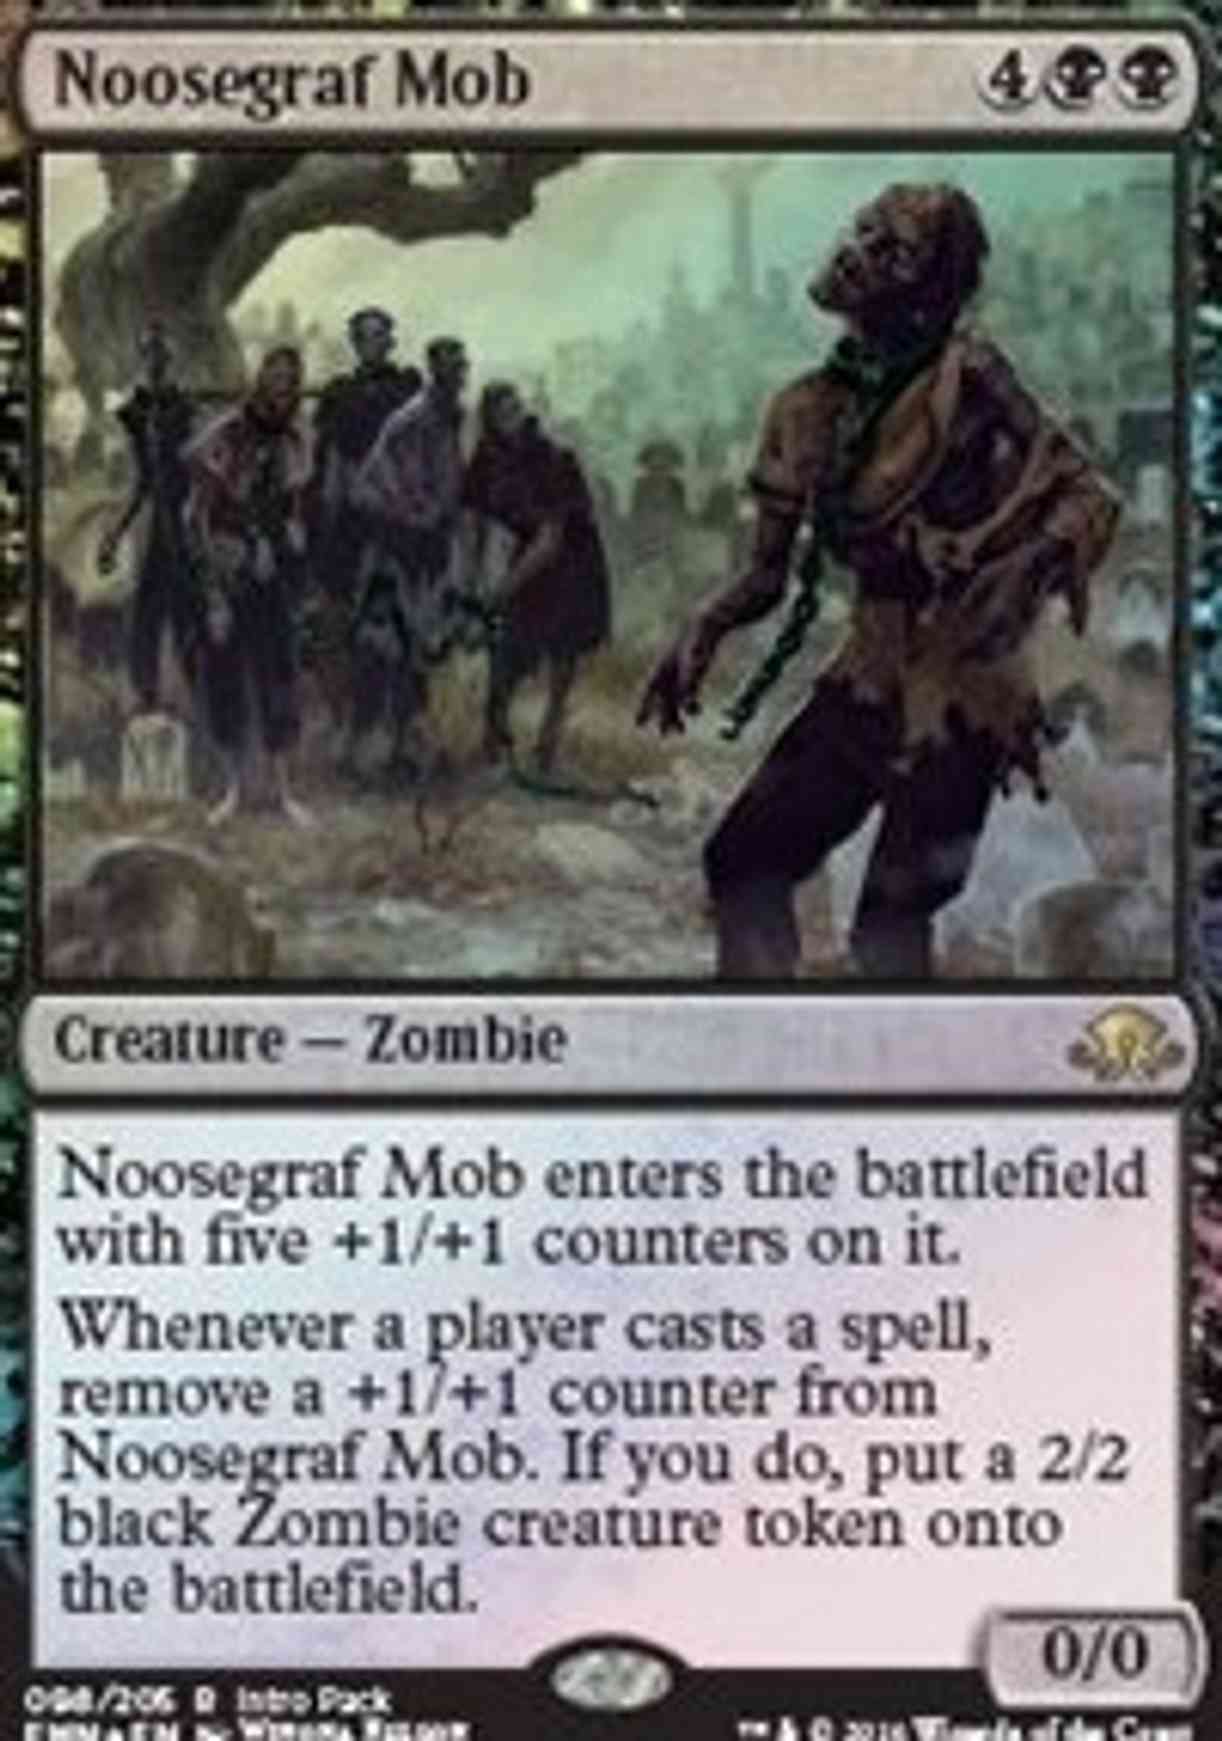 Noosegraf Mob magic card front